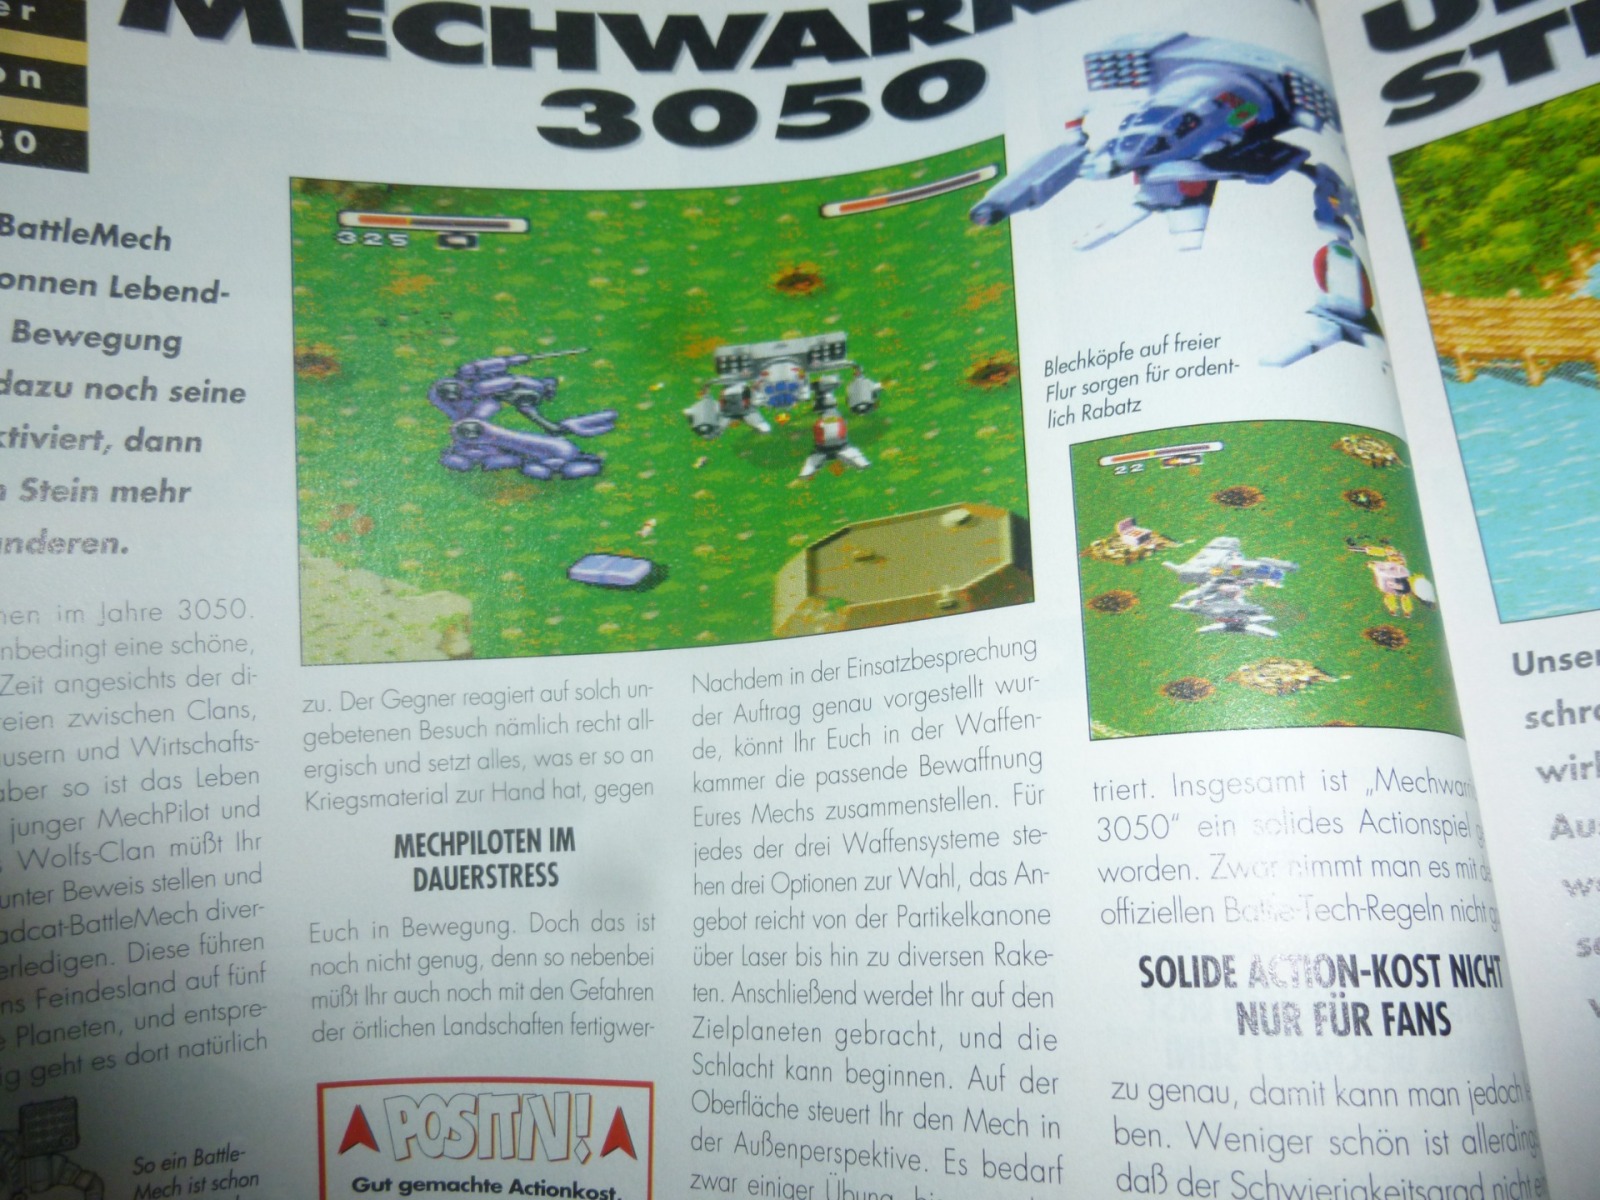 TOTAL Das unabhängige Magazin - 100% Nintendo - Ausgabe 2/96 1996 12